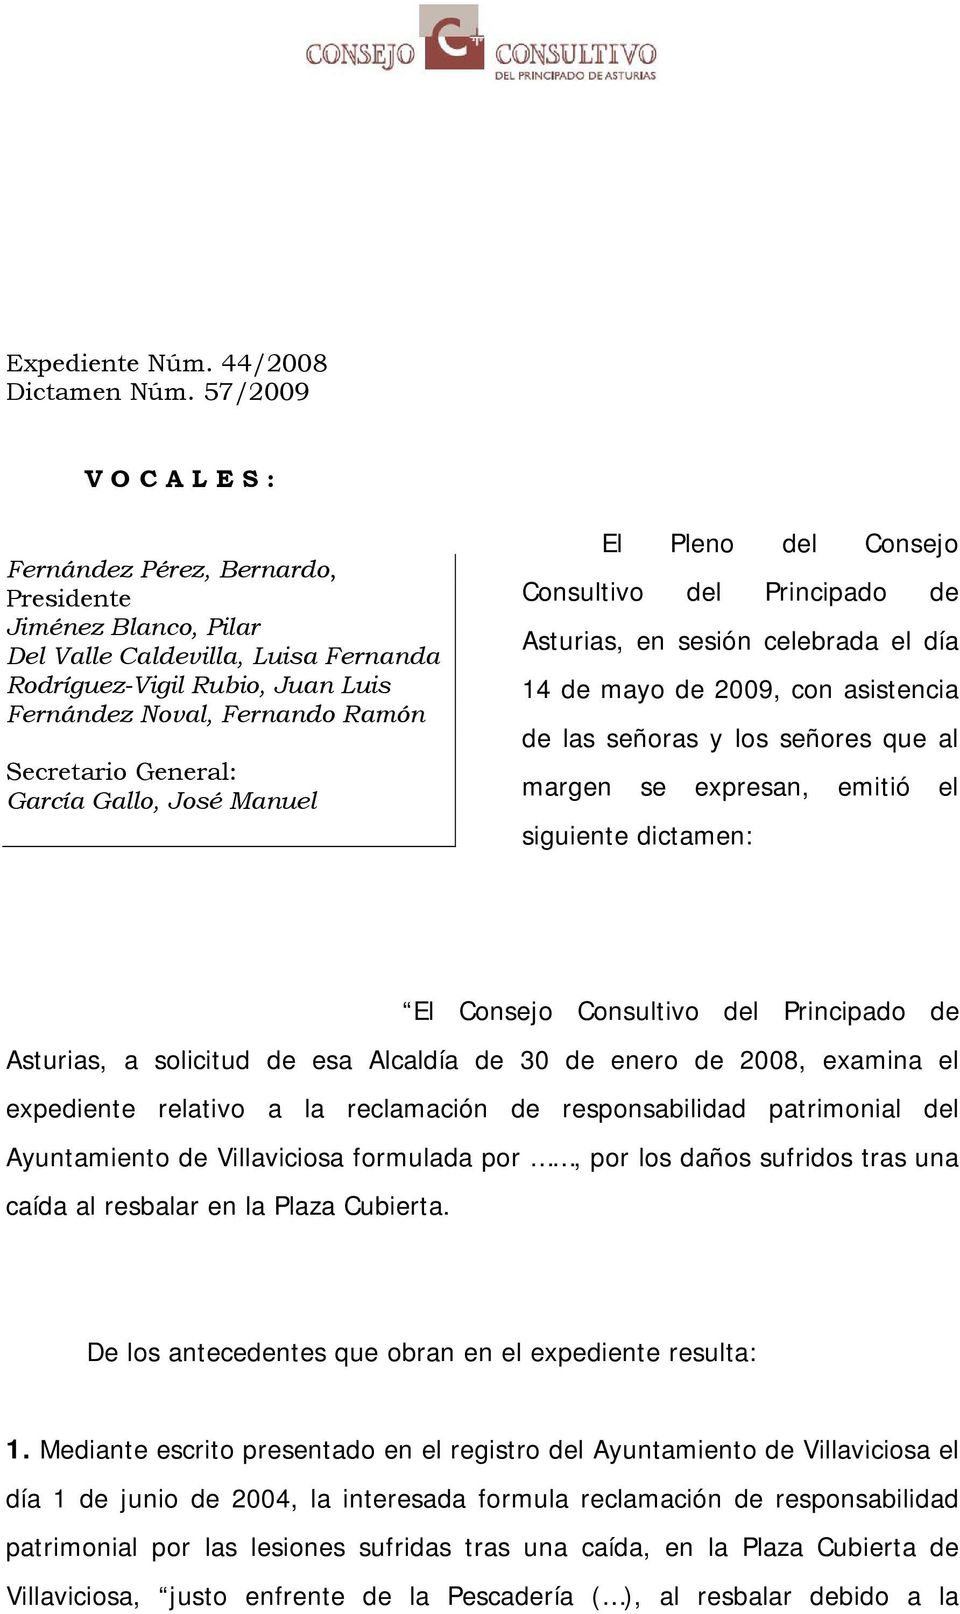 General: García Gallo, José Manuel El Pleno del Consejo Consultivo del Principado de Asturias, en sesión celebrada el día 14 de mayo de 2009, con asistencia de las señoras y los señores que al margen